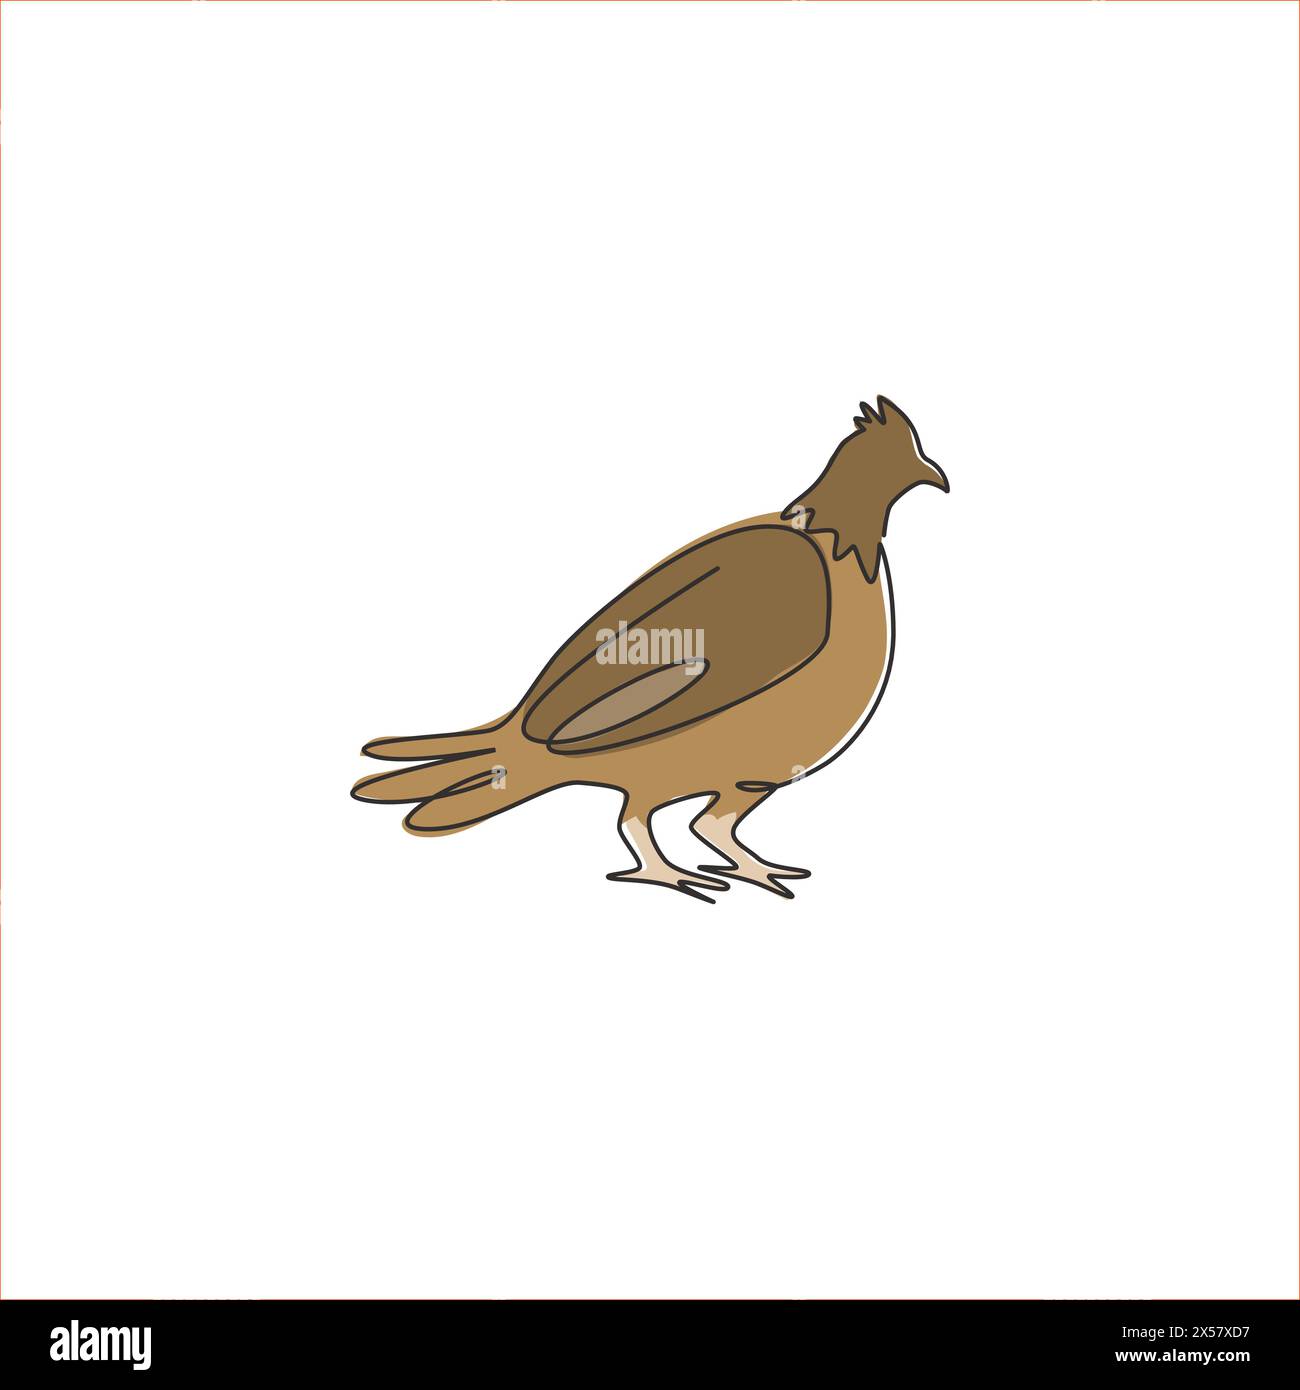 Disegno a linea singola continua di un uccello di gabbiano carino per l'identità del logo aziendale. Il concetto di mascotte del Game Bird Festival per l'icona della cultura del Regno Unito. Moder Illustrazione Vettoriale